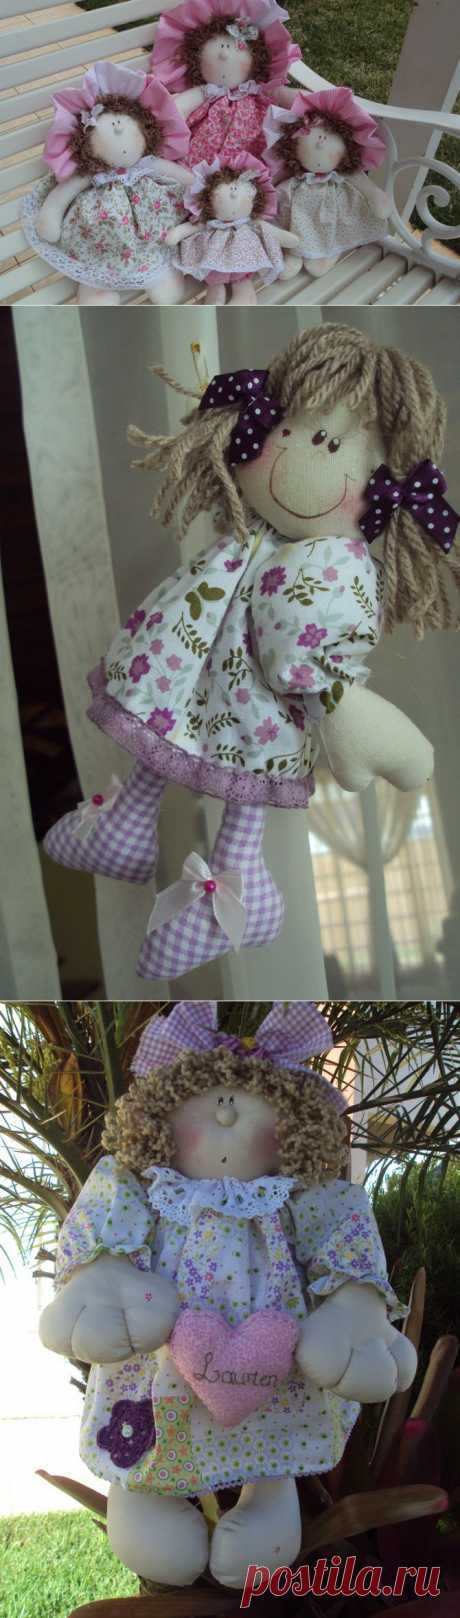 Работы Maria Helena Strapazzon Furlan: лоскутные куклы, аппликации